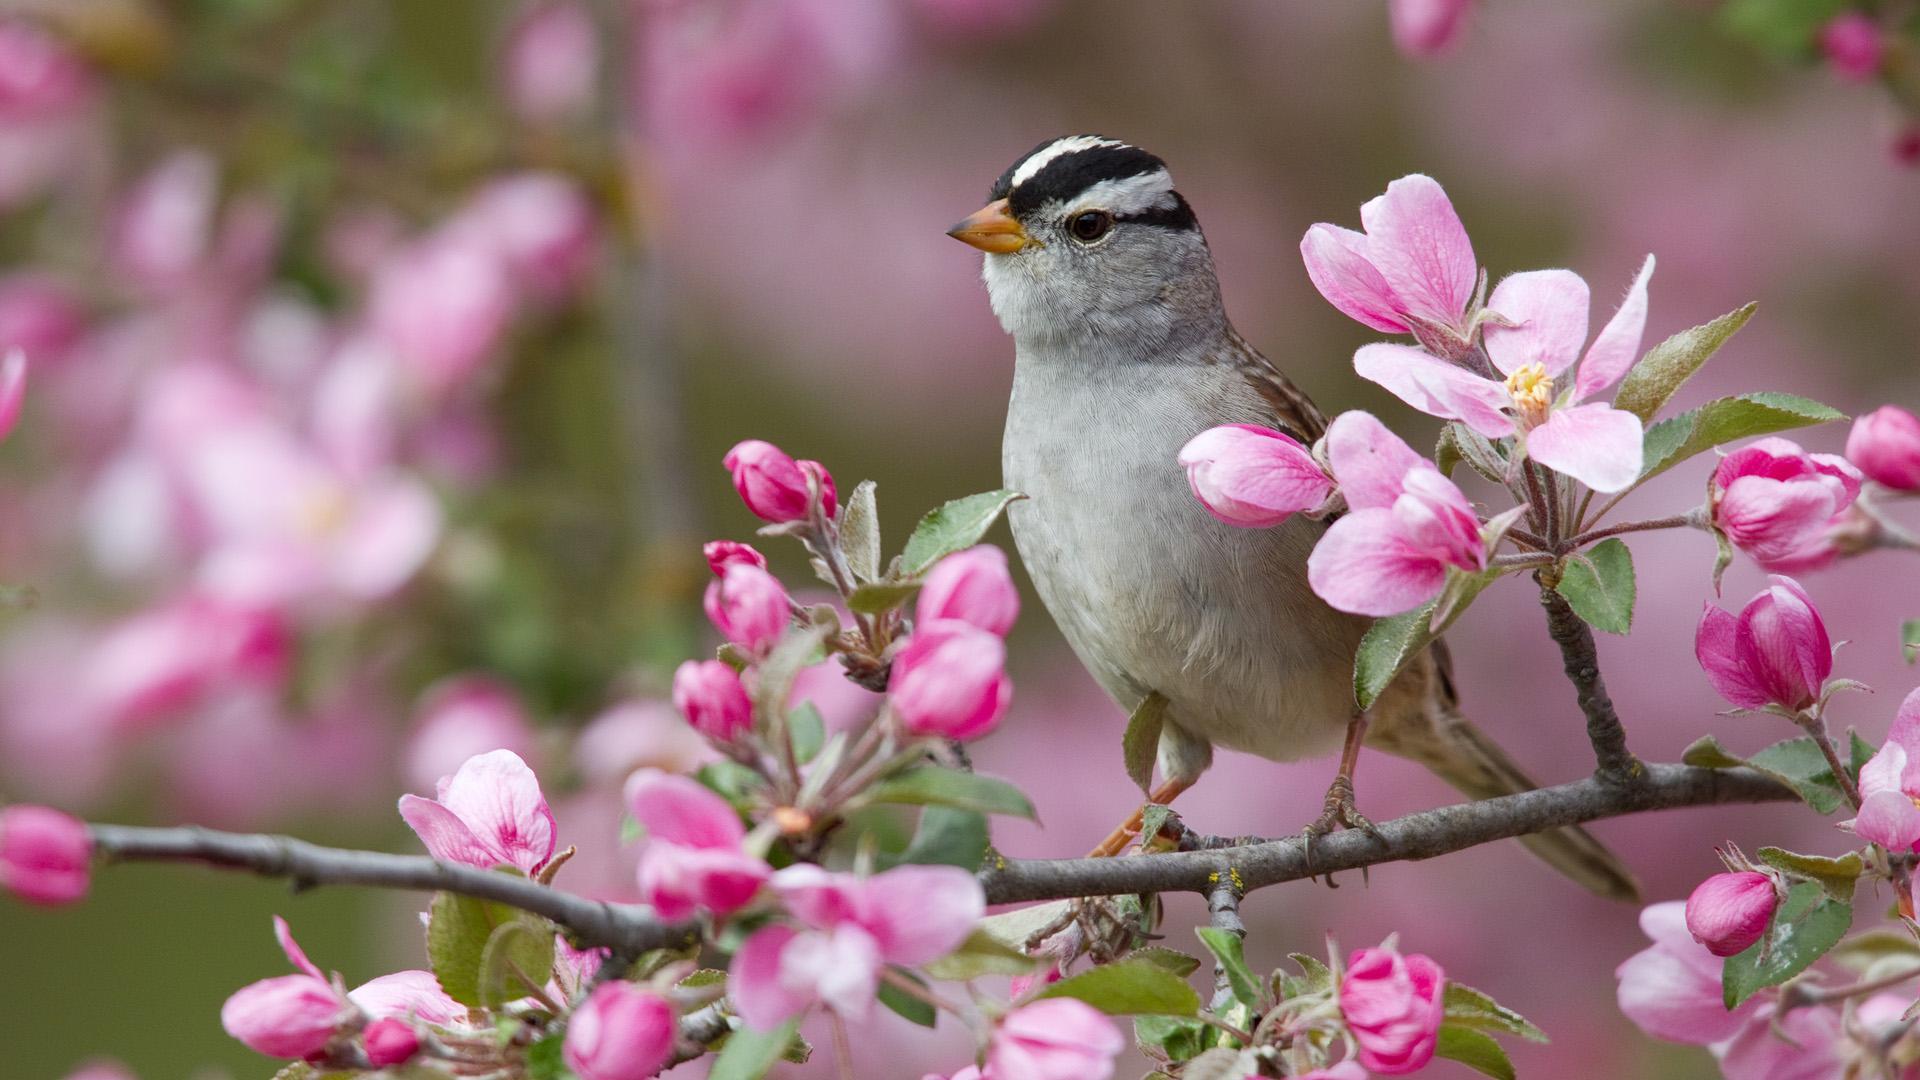 Hd Wallpaper Bird of Spring